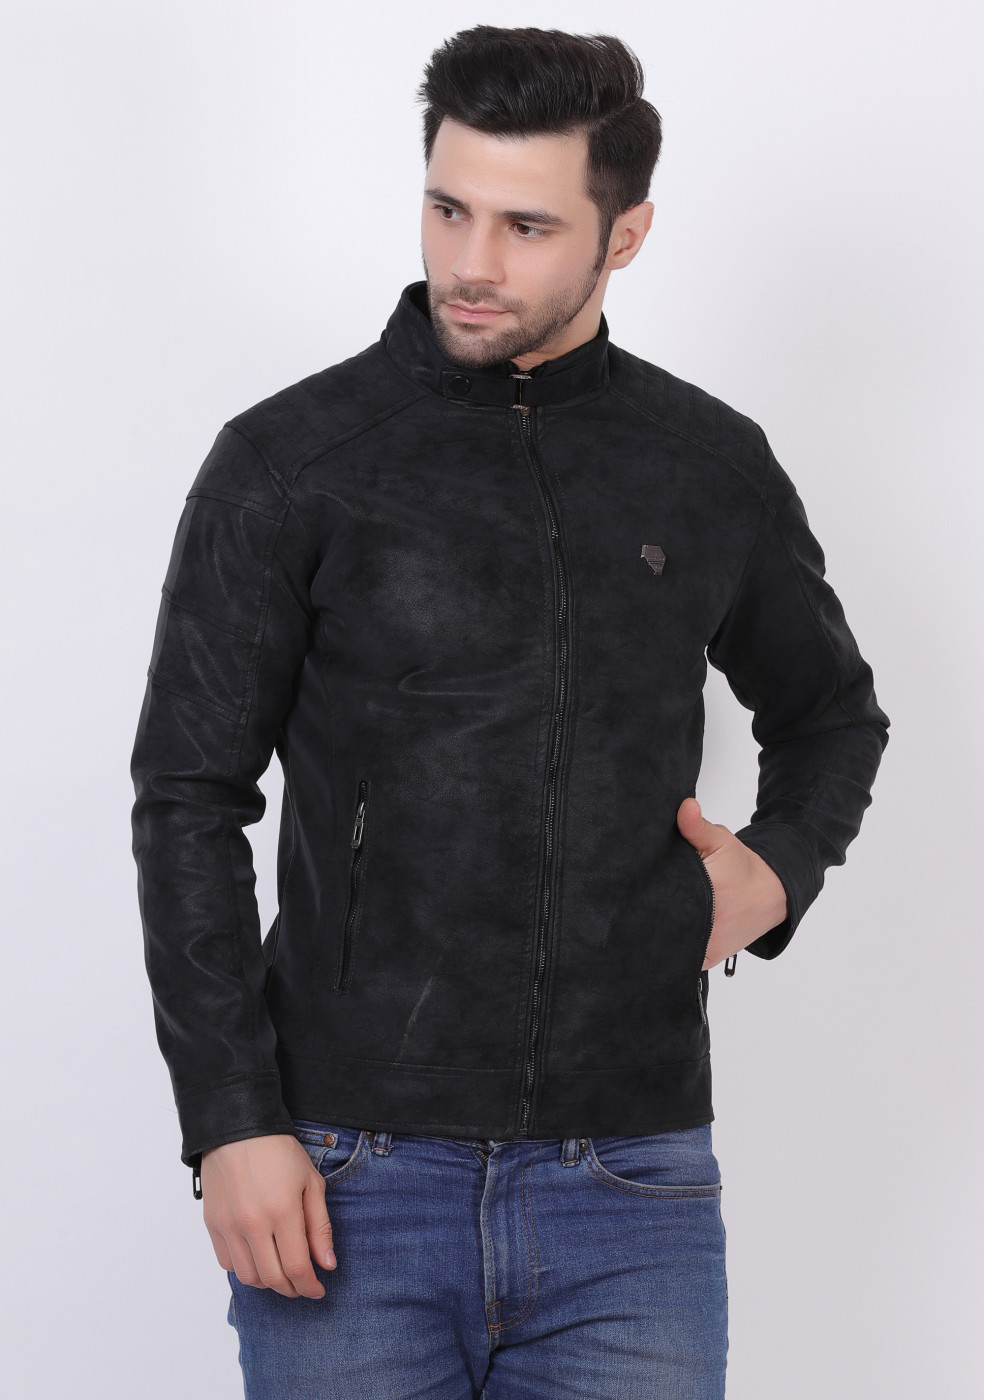 Men Stylish Black Lather Jacket